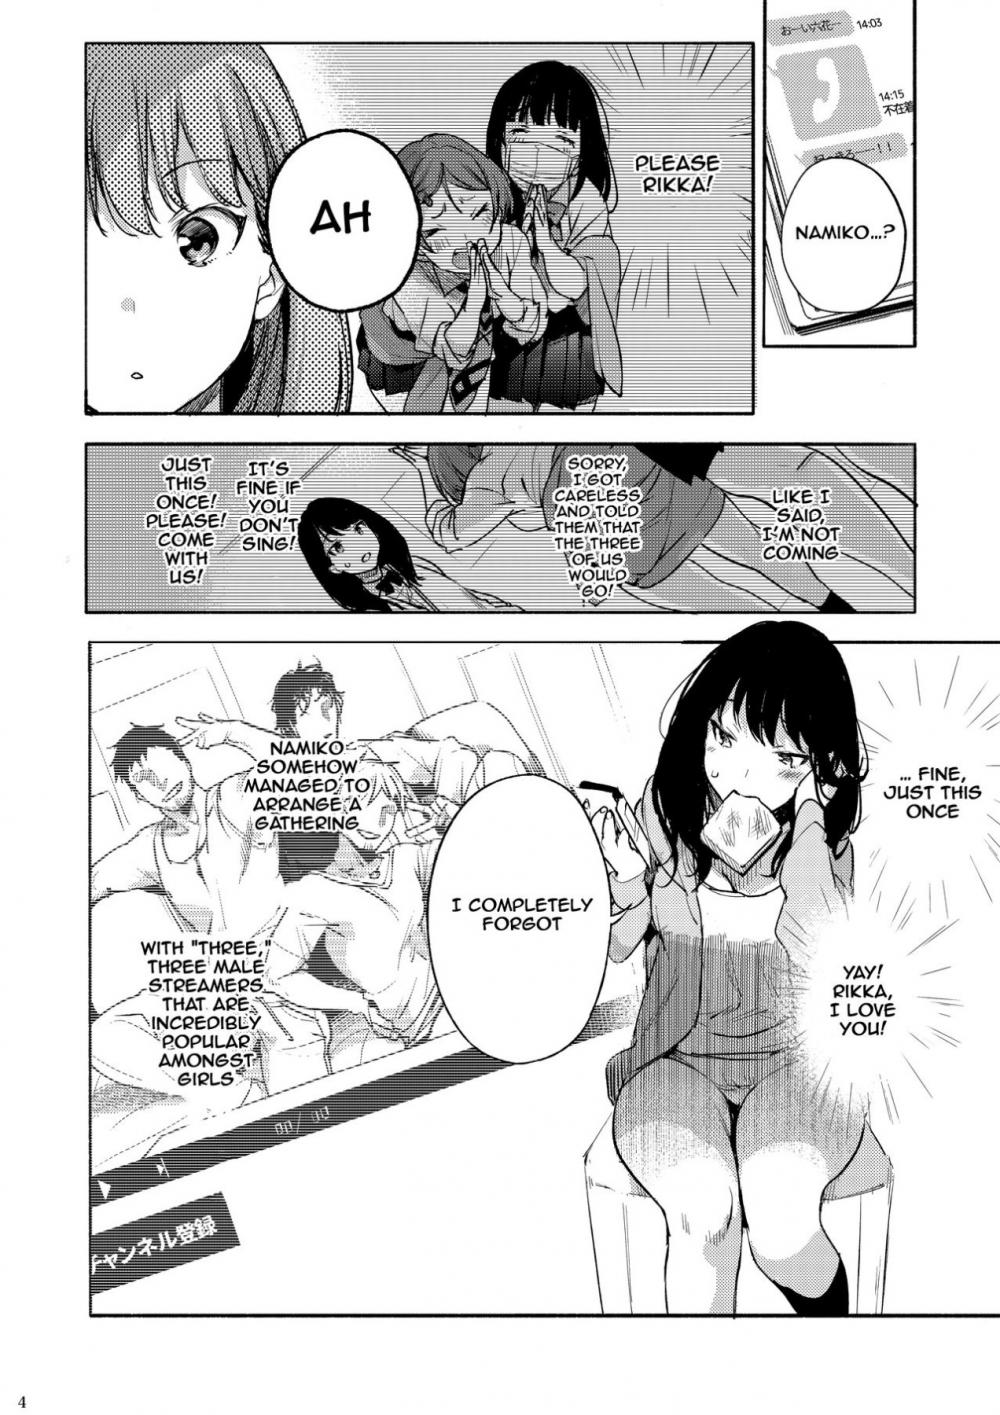 Hentai Manga Comic-Rikka ChaAaAAaAAAaaAn!!-Read-3